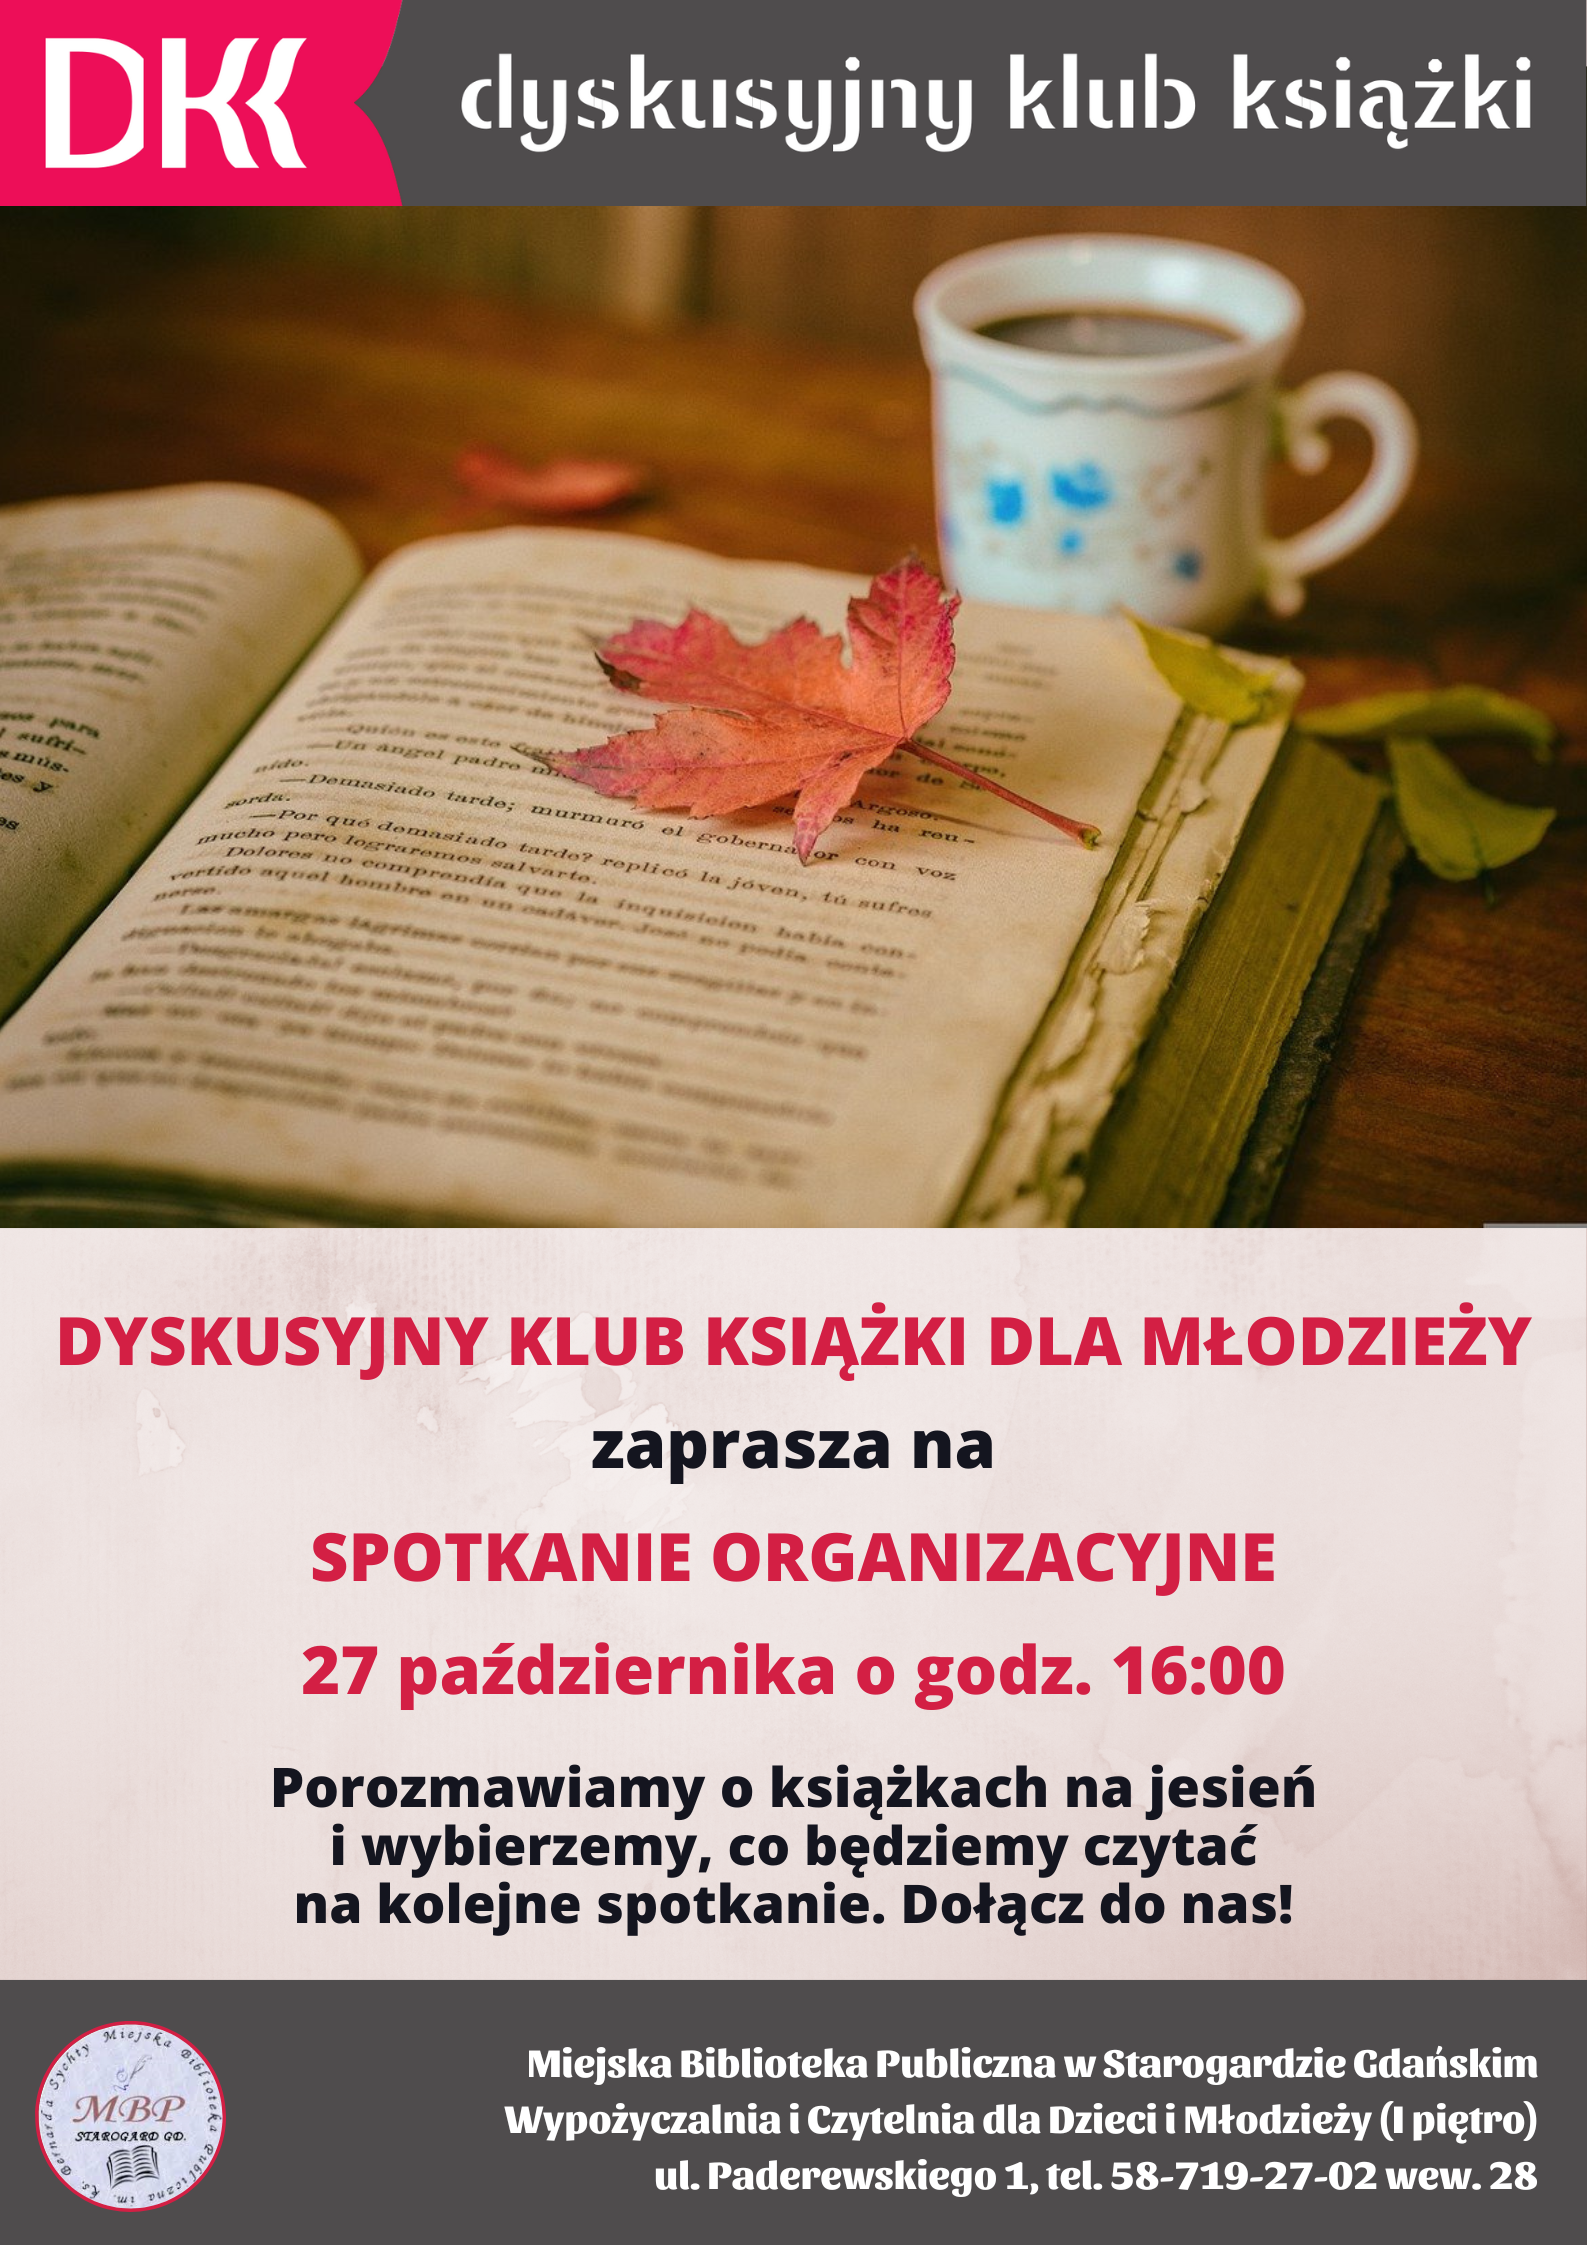 Dyskusyjny Klub Książki dla Młodzieży zaprasza na spotkanie organizacyjne 27 października o godz. 16:00. Porozmawiamy o książkach na jesień i wybierzemy, co będziemy czytać na kolejne spotkanie. Dołącz do nas! Miejska Biblioteka Publiczna im. ks. Bernarda Sychty, Wypożyczalnia i Czytelnia dla Dzieci i Młodzieży (I piętro), ul. Paderewskiego 1, tel. 58-719-27-02 wew. 28. Zdjęcie otwartej książki, obok kubek z napojem, kolorowe jesienne liście, w tym jeden na książce.